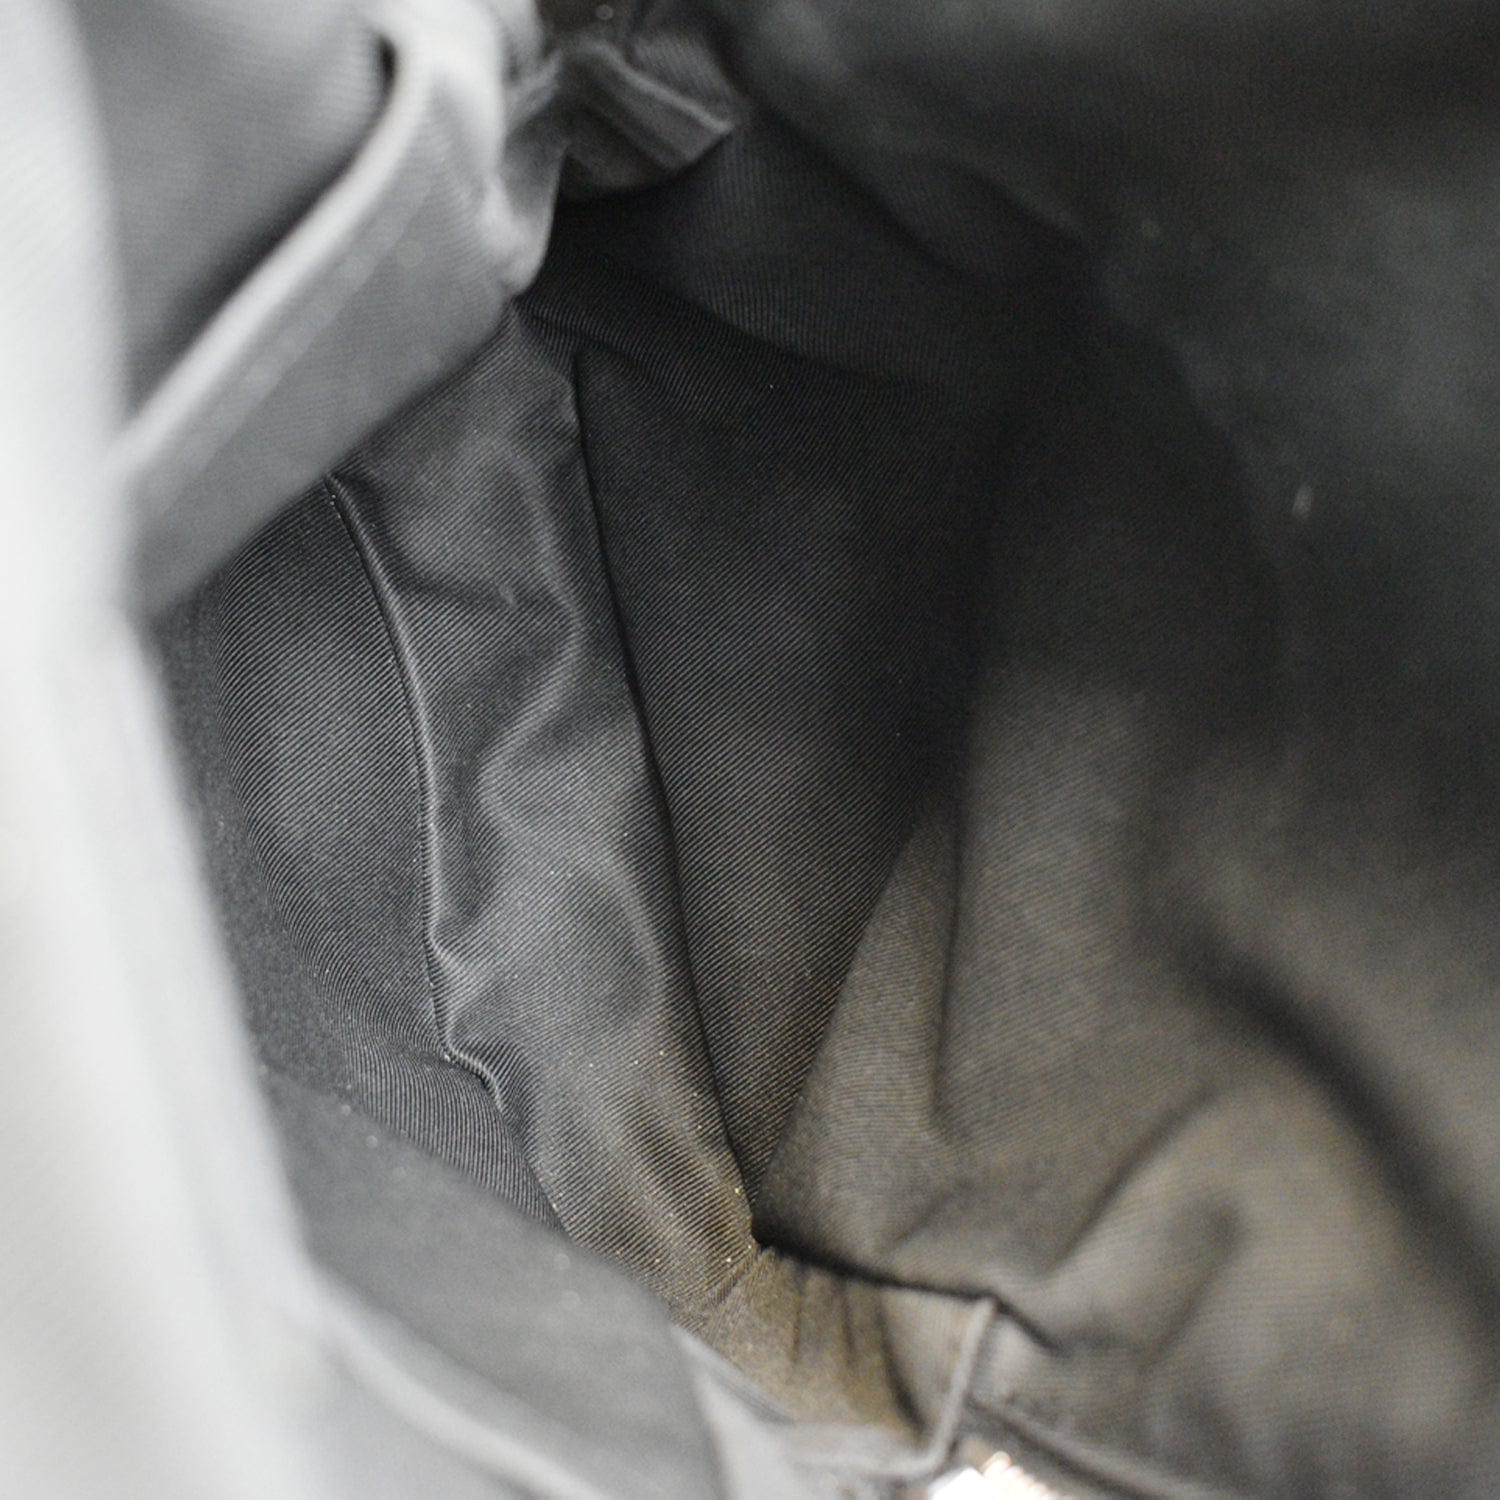 Louis Vuitton Avenue Sling Bag Limited Edition Damier Graphite Pixel Black  87741137